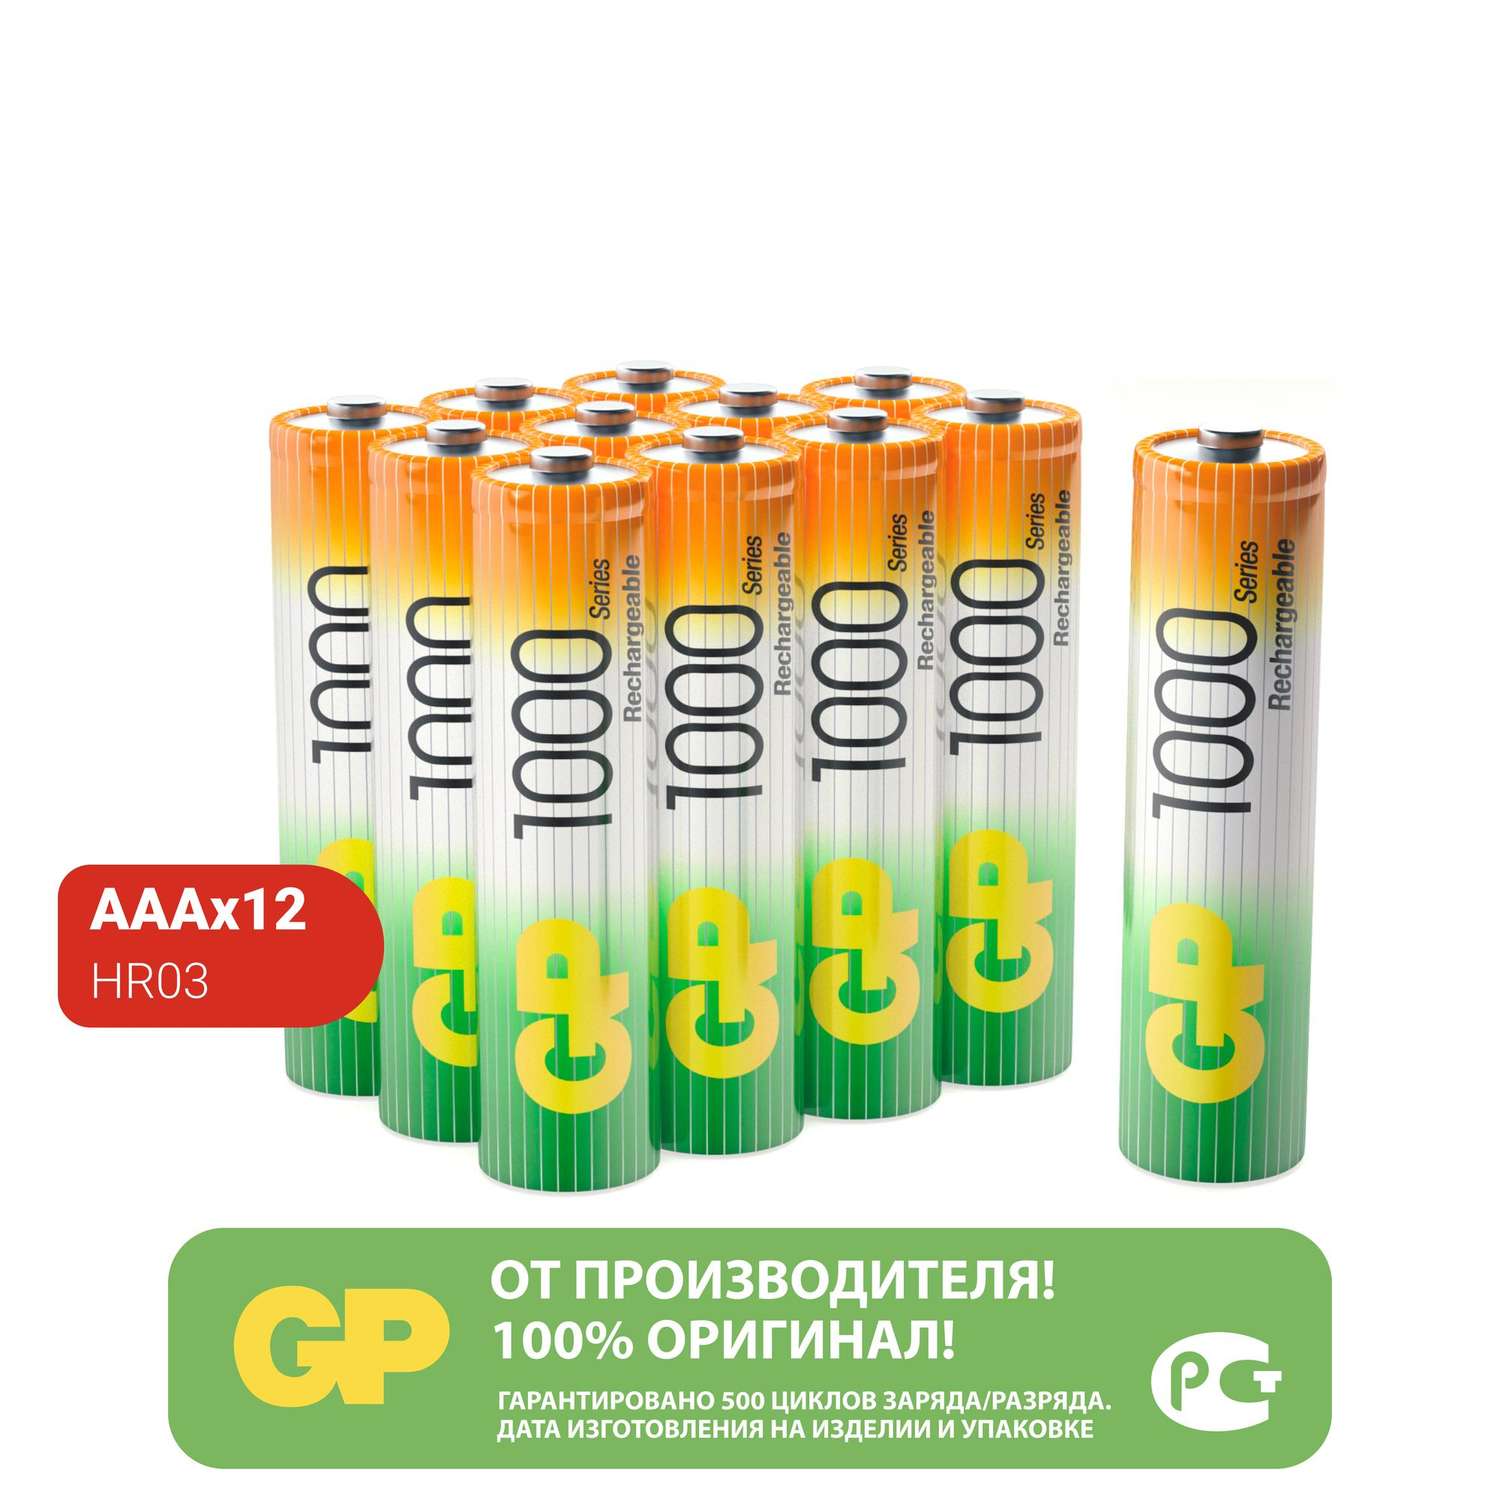 Набор аккумуляторов GP перезаряжаемые 100AAA(мизинцы) 12 штук в упаковке - фото 1